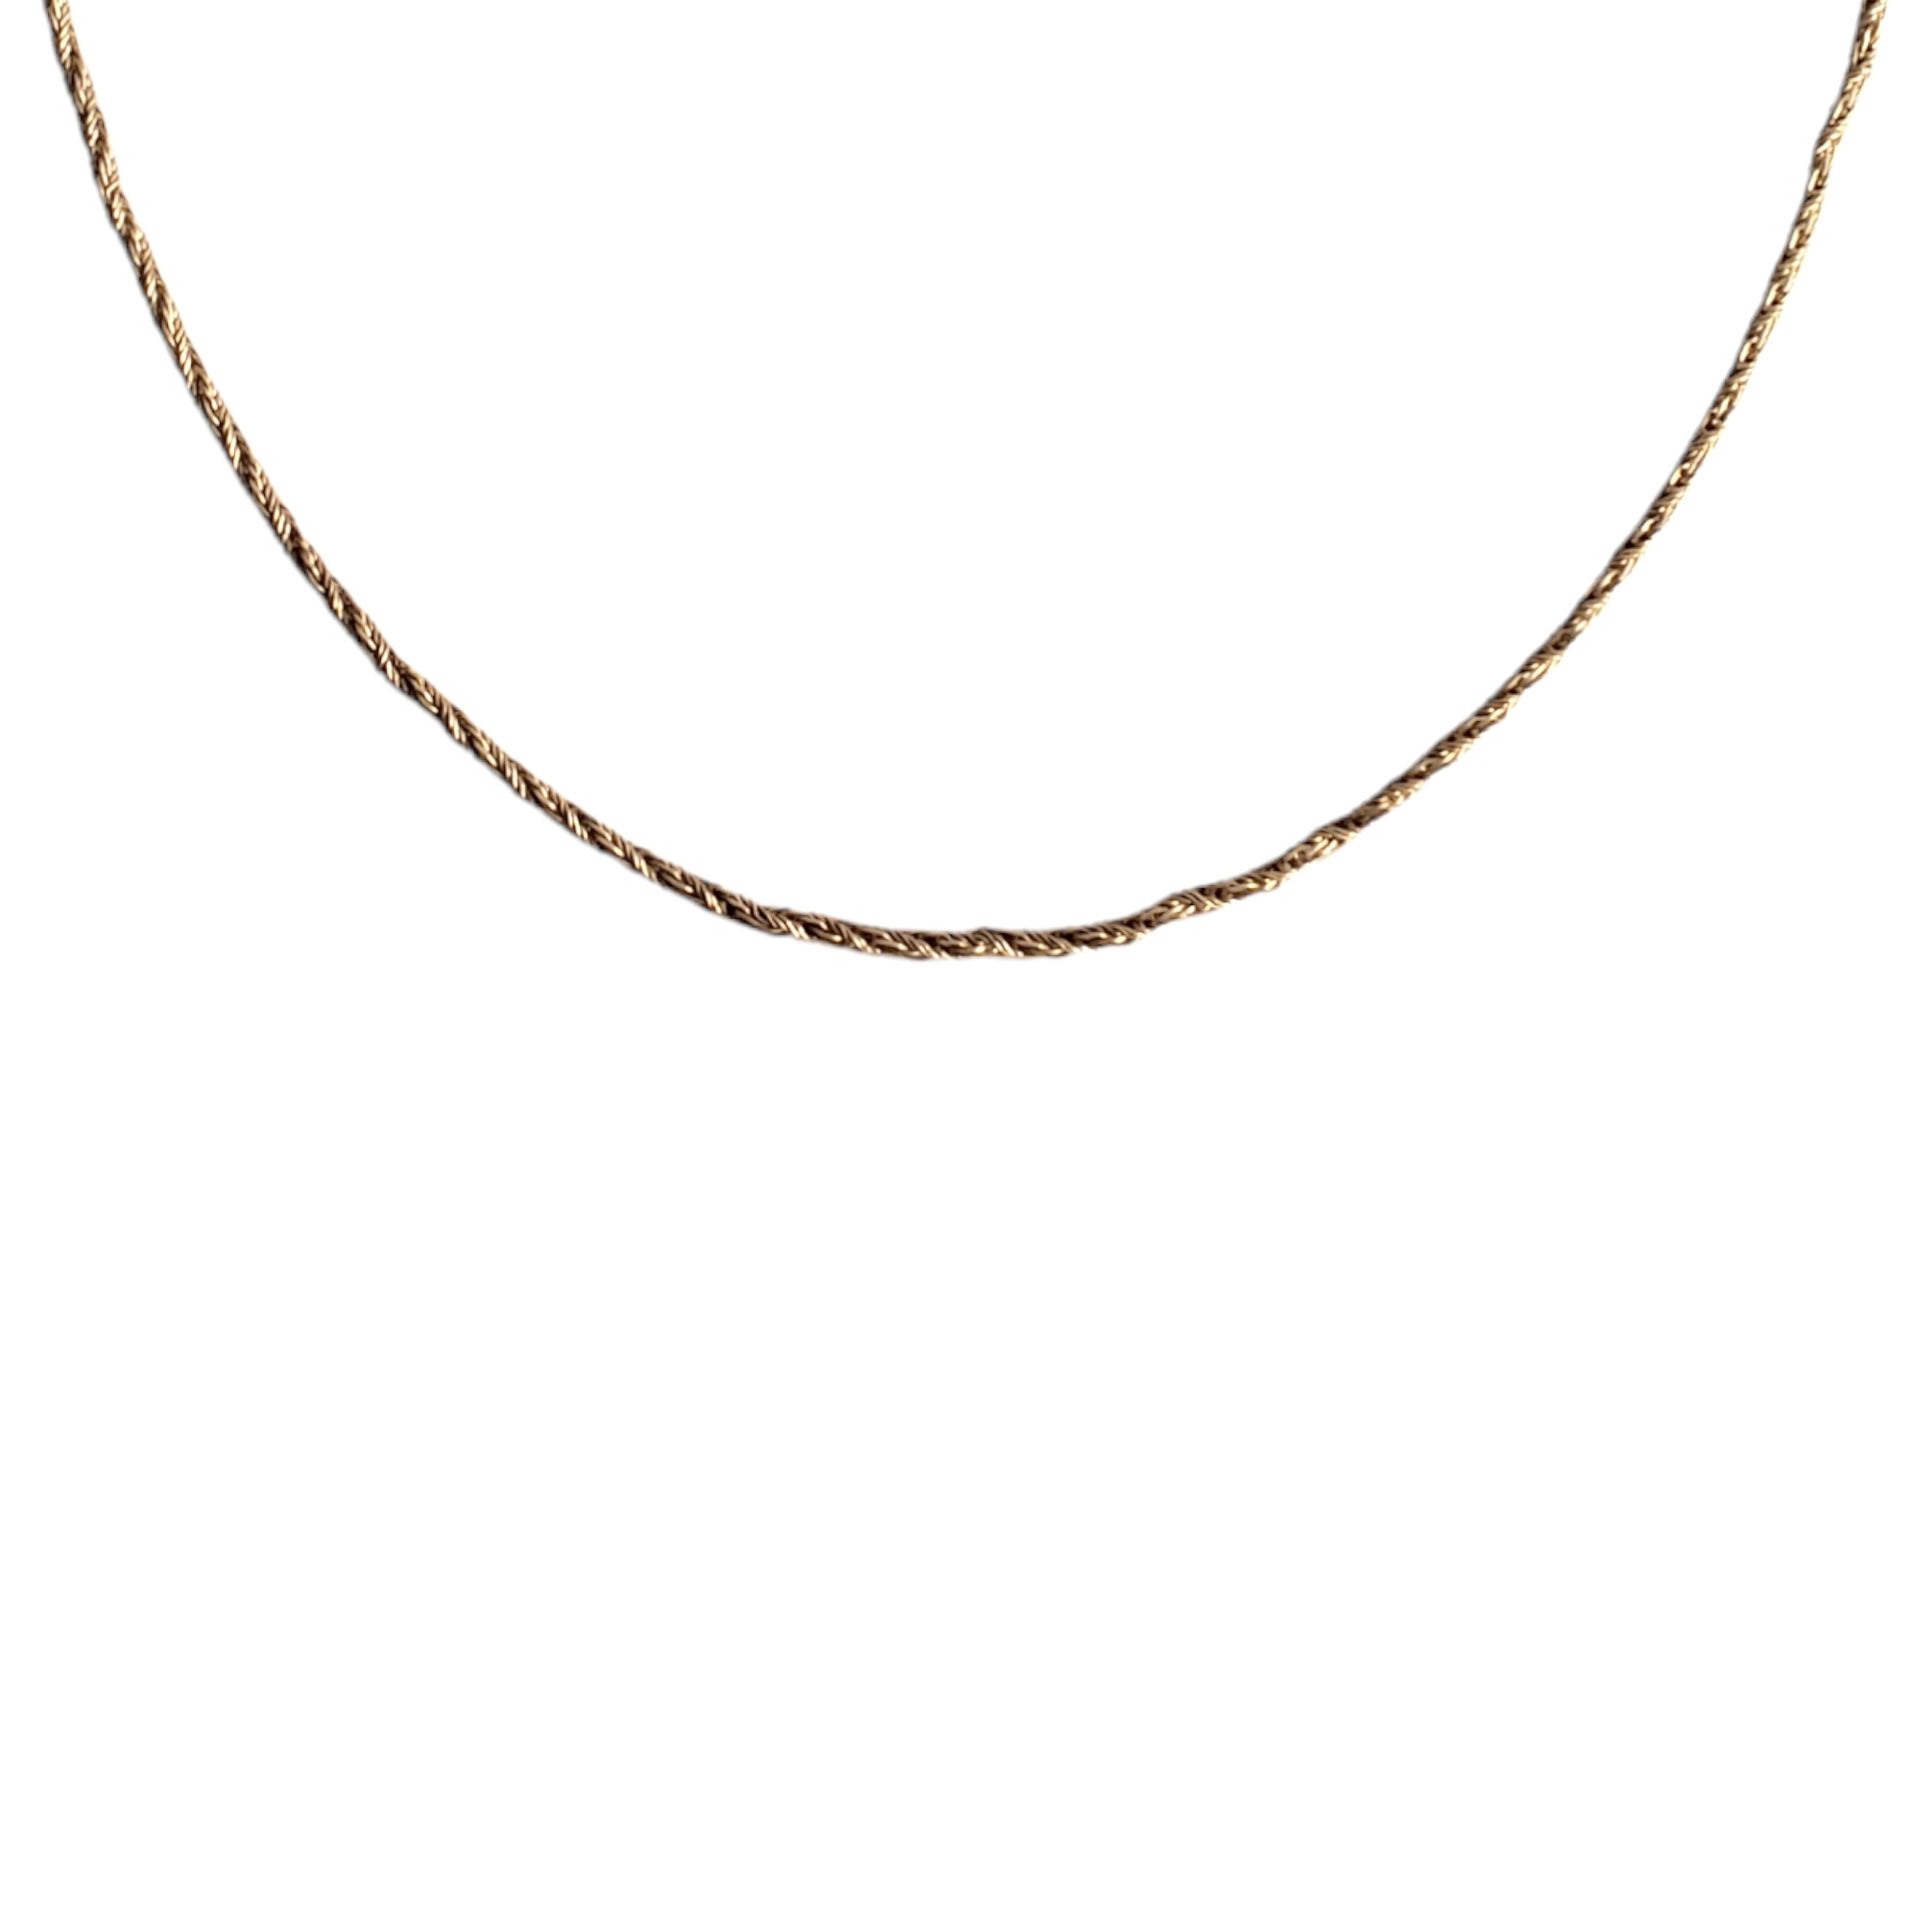 Cadena de plata 铂金的绳索类型。仲达多斯。二十。

50厘米。重量10克